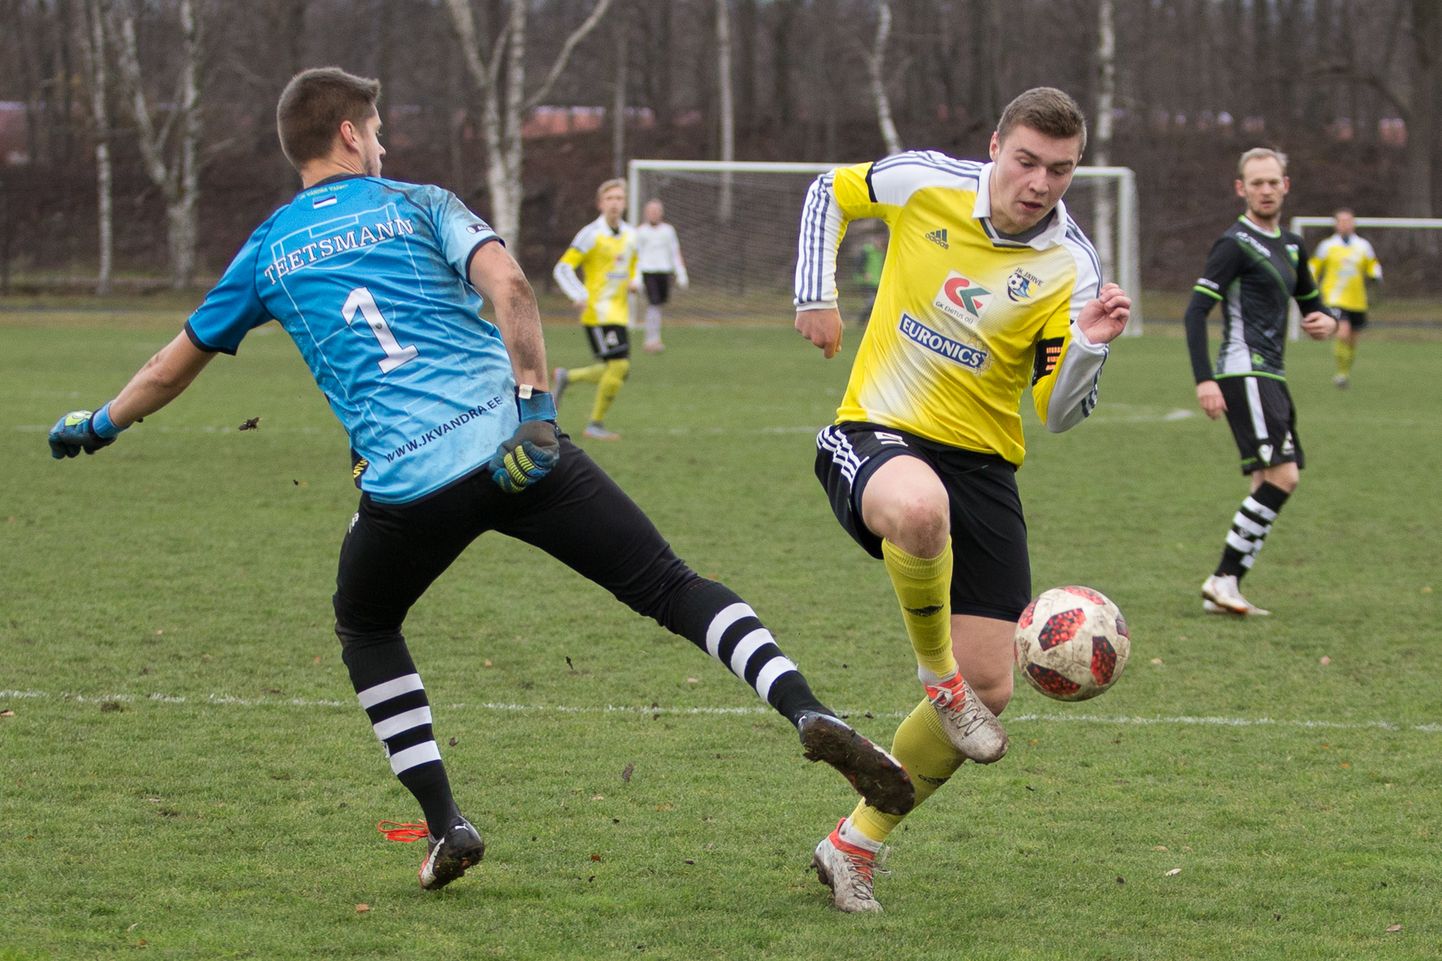 Капитаном молодой команды ФК "Ярве" является 18-летний полузащитник Глеб Певцов, входящий в сборную Эстонии U19.